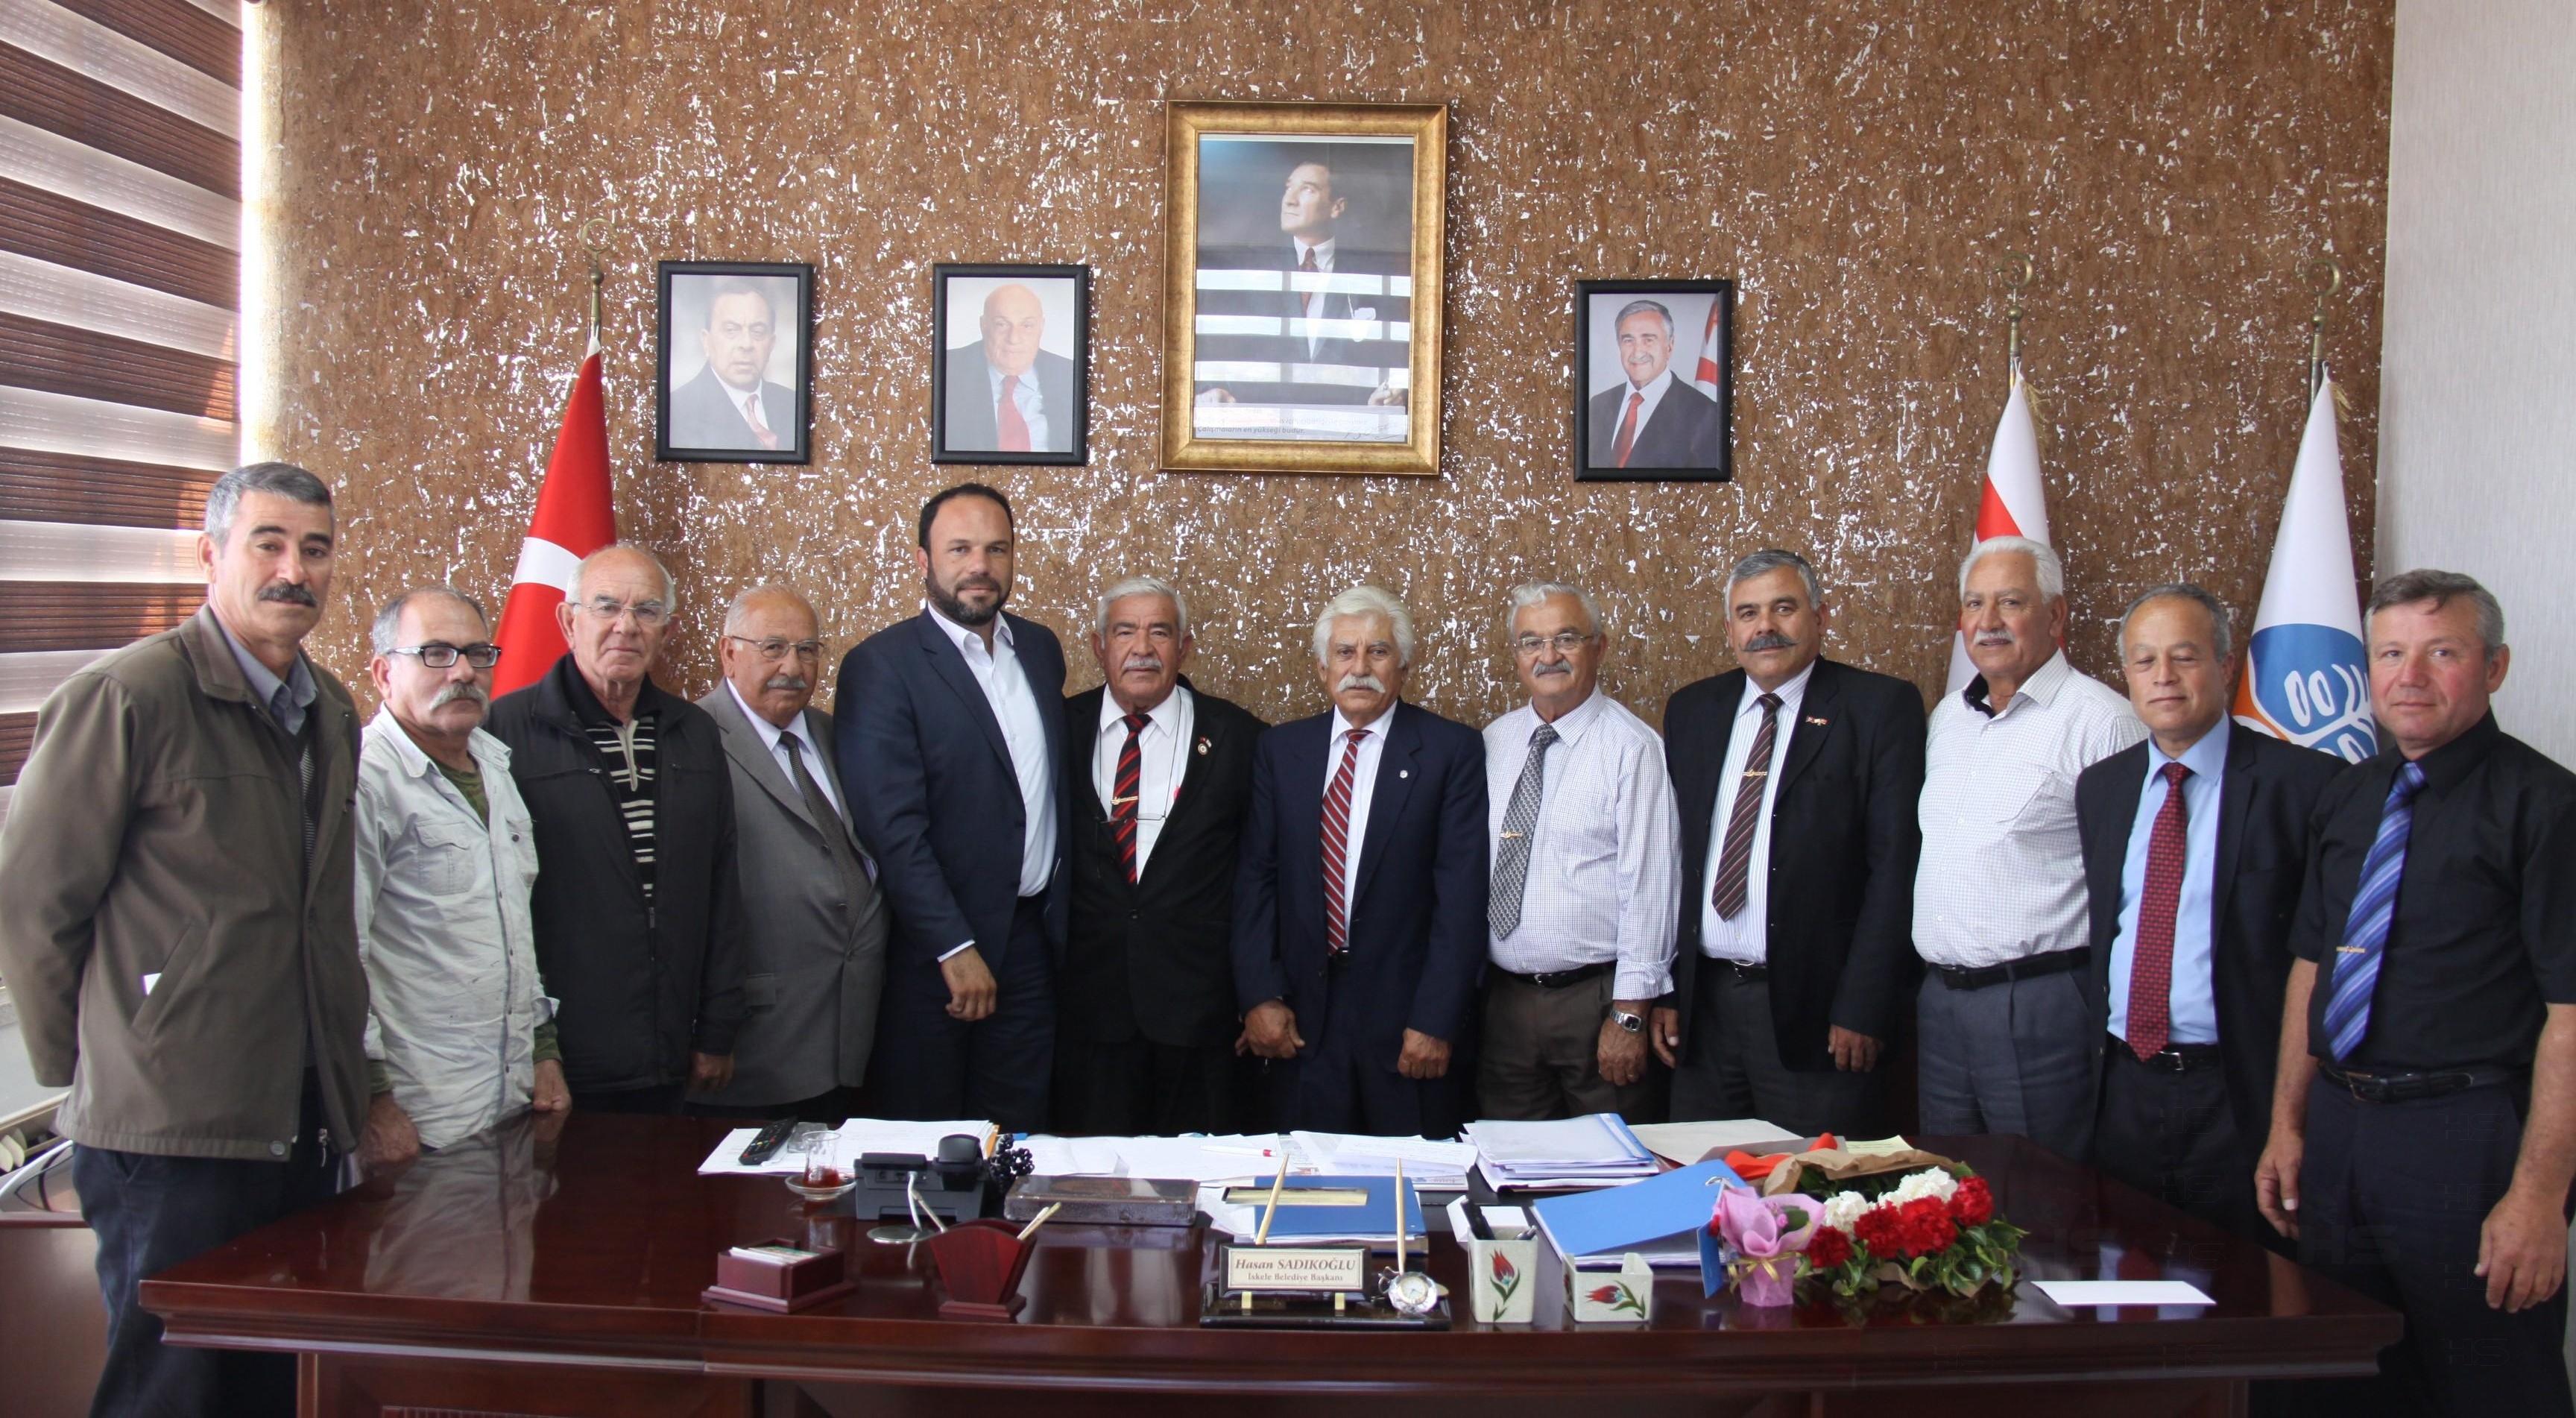 TMT Mücahitler Derneği İskele Şubesi üyeleri, İskele Belediye Başkanı Hasan Sadıkoğlu'nu ziyaret etti